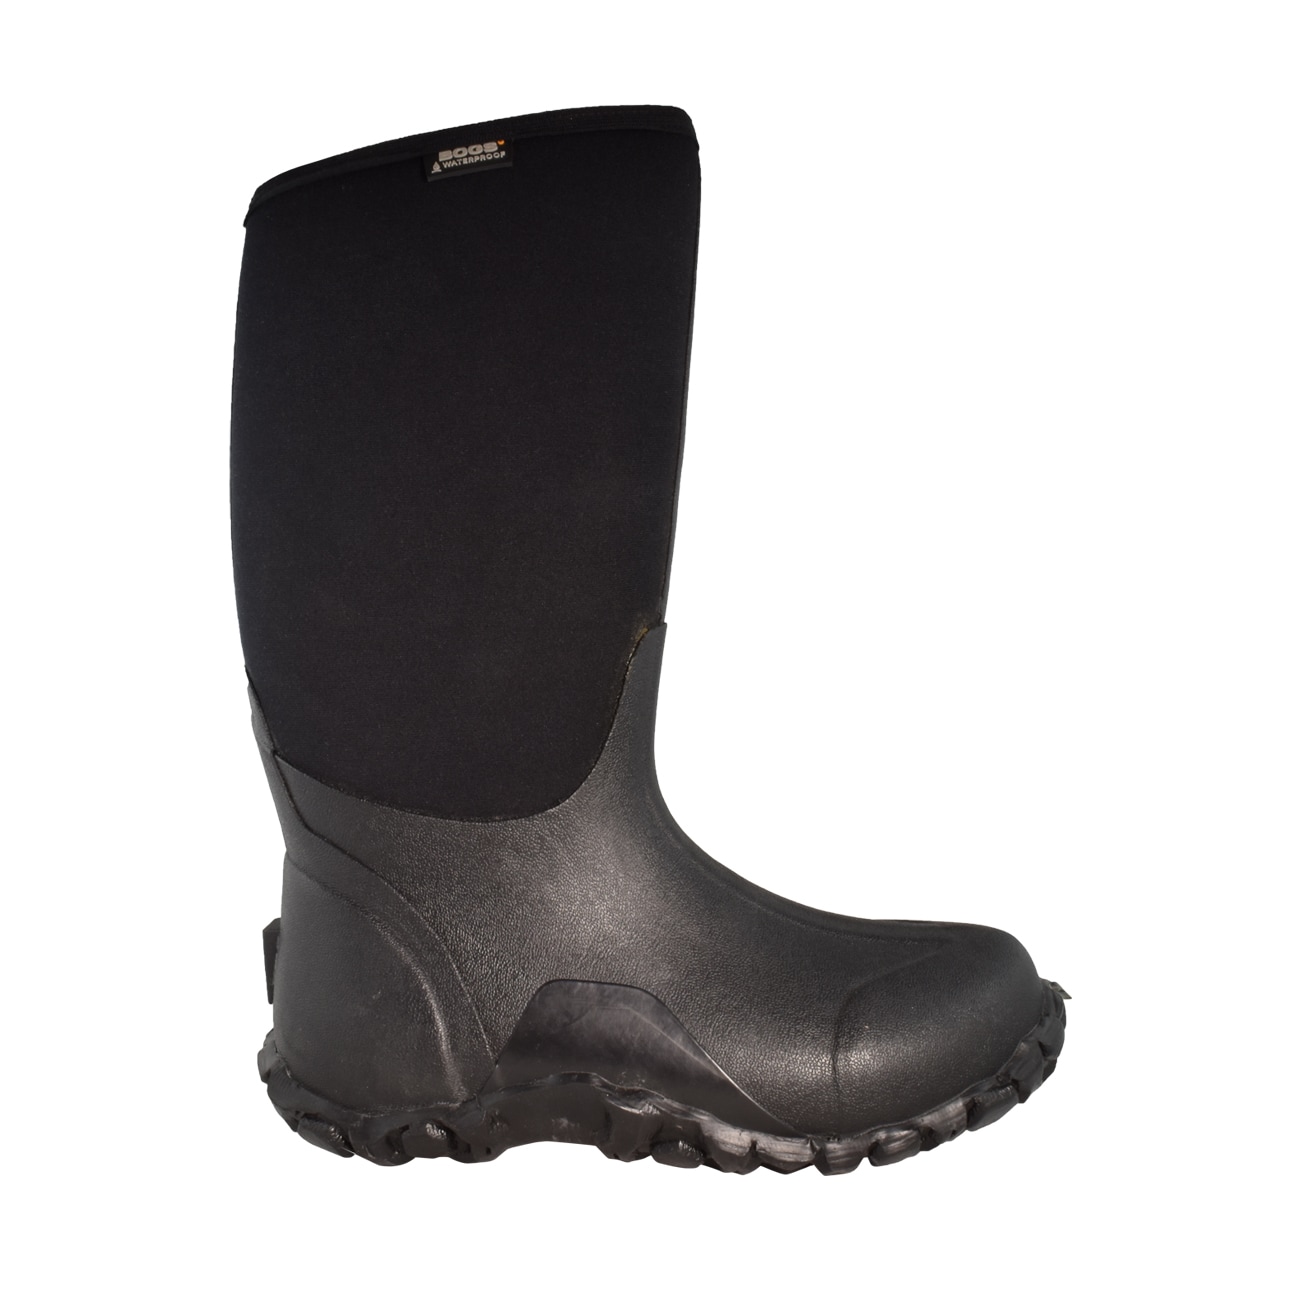 bogs boots black friday deals